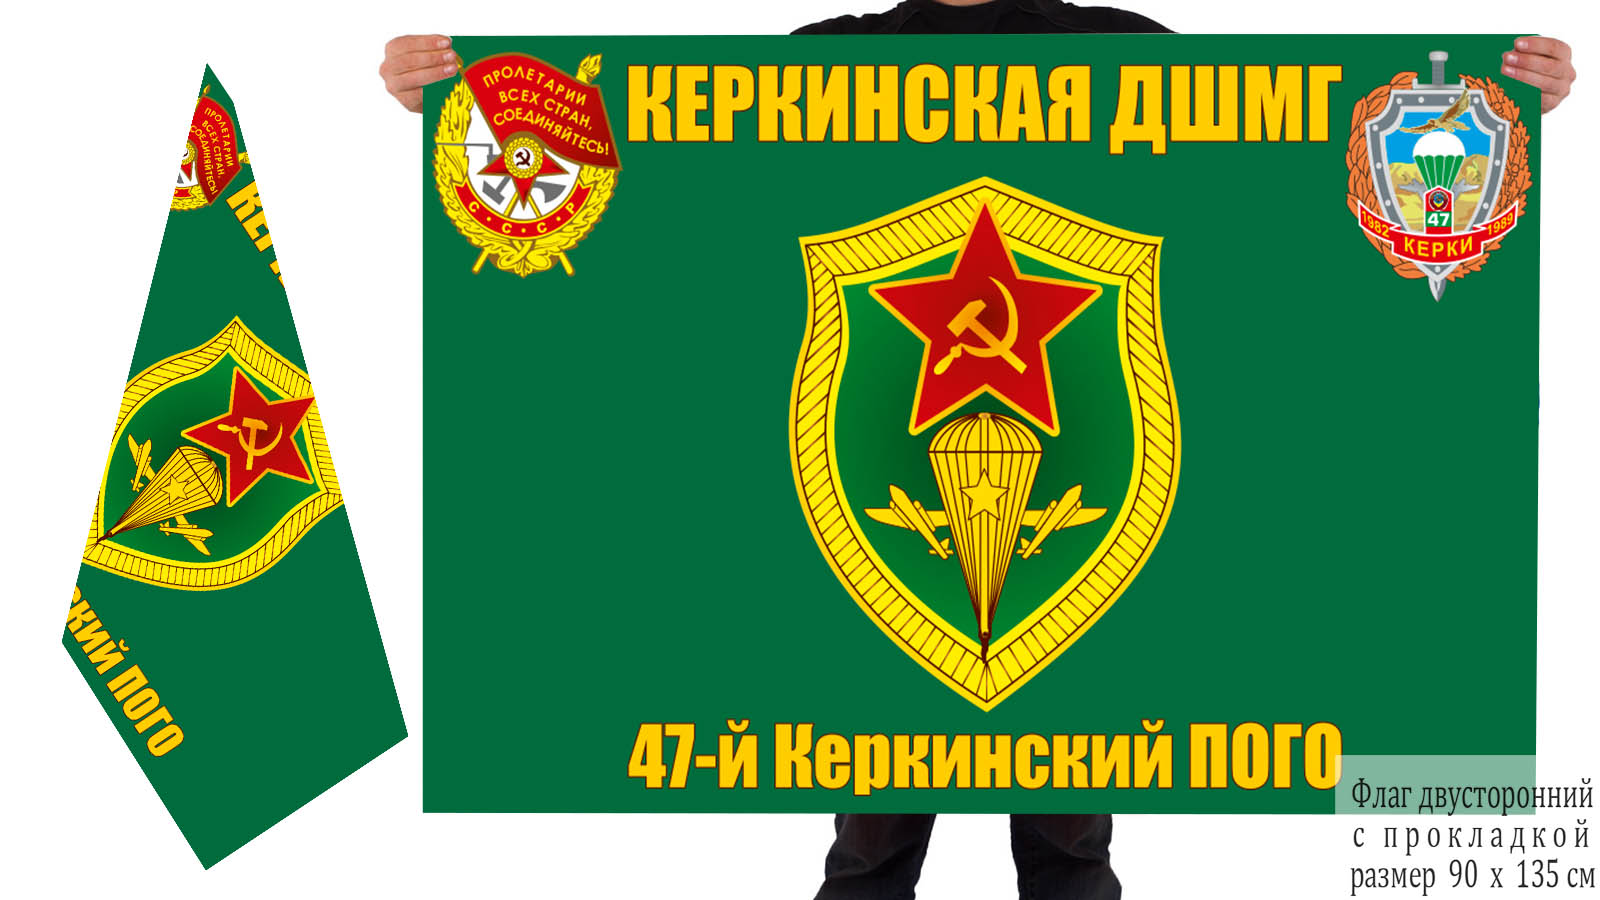 Флаг ДШМГ 47-го Керкинского ПогО 